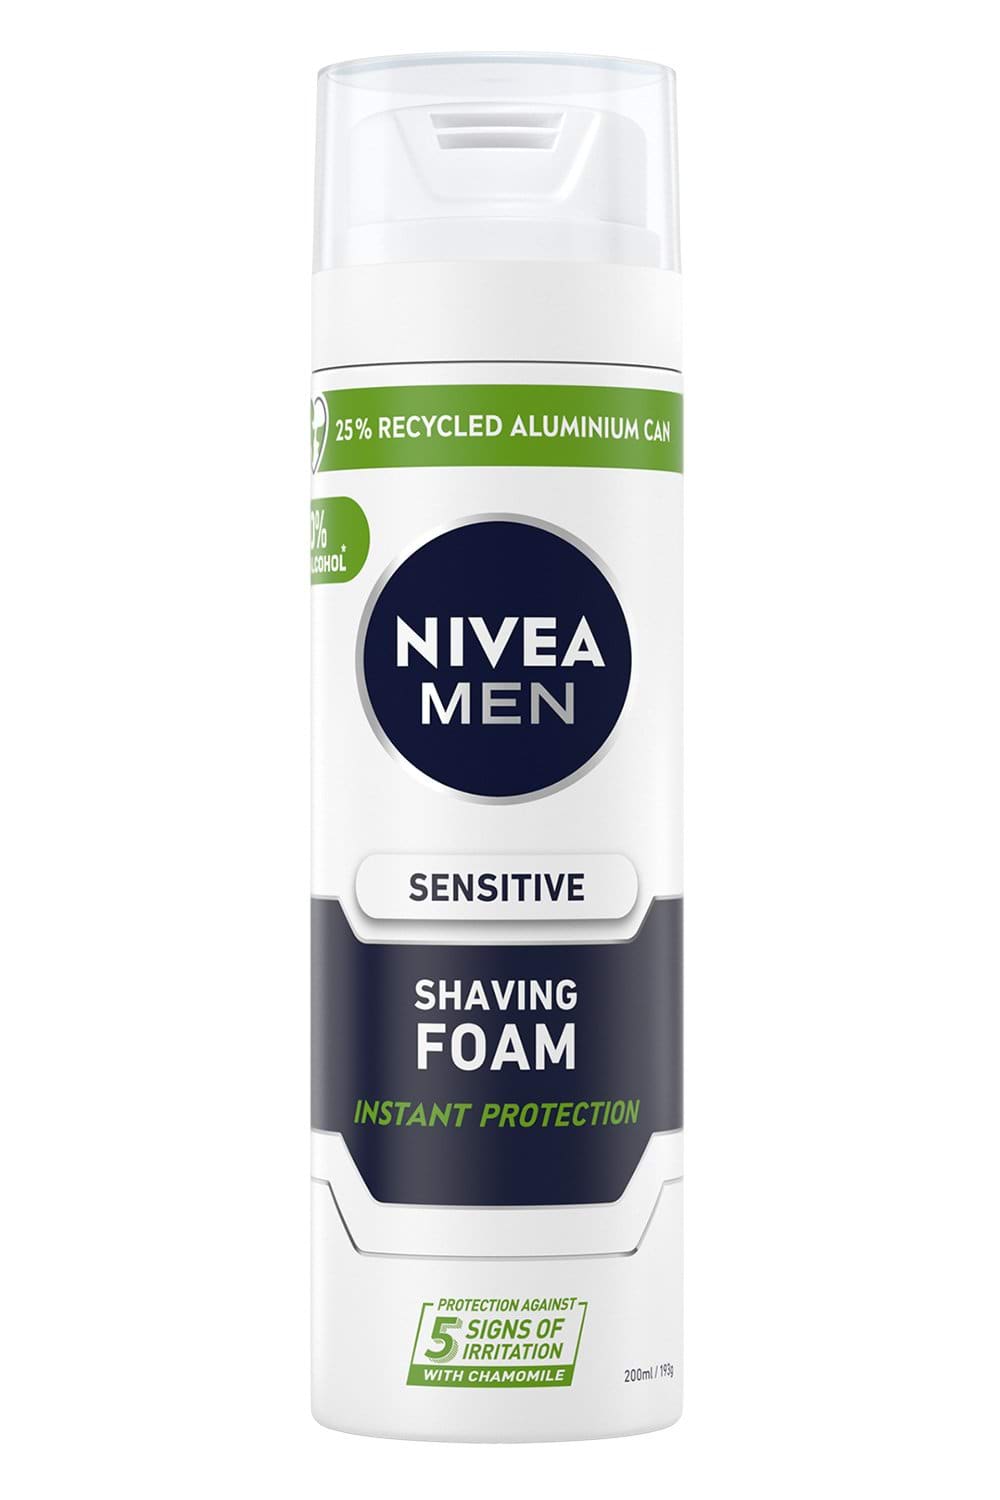 Пена для бритья NIVEA MEN для чувствительной кожи 200 мл.